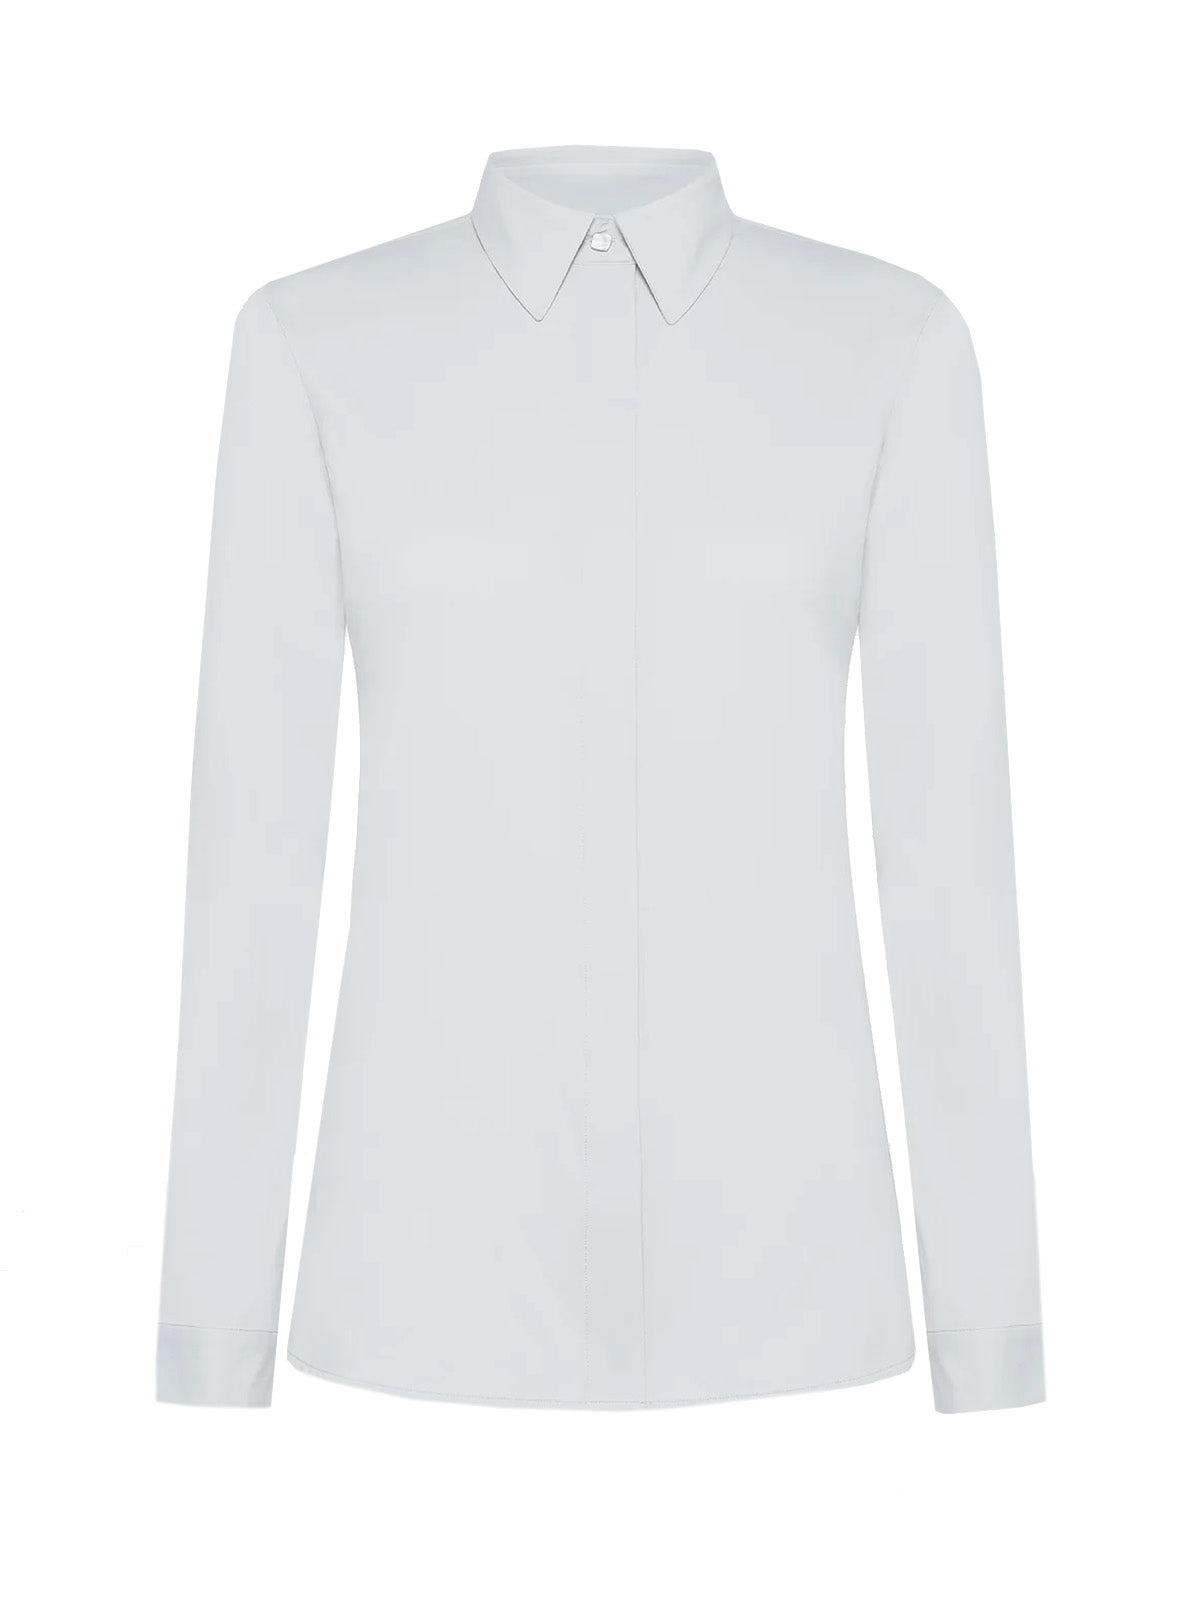 Bluse e camicie Donna RRD - Oxford Plain Wom Shirt - Bianco